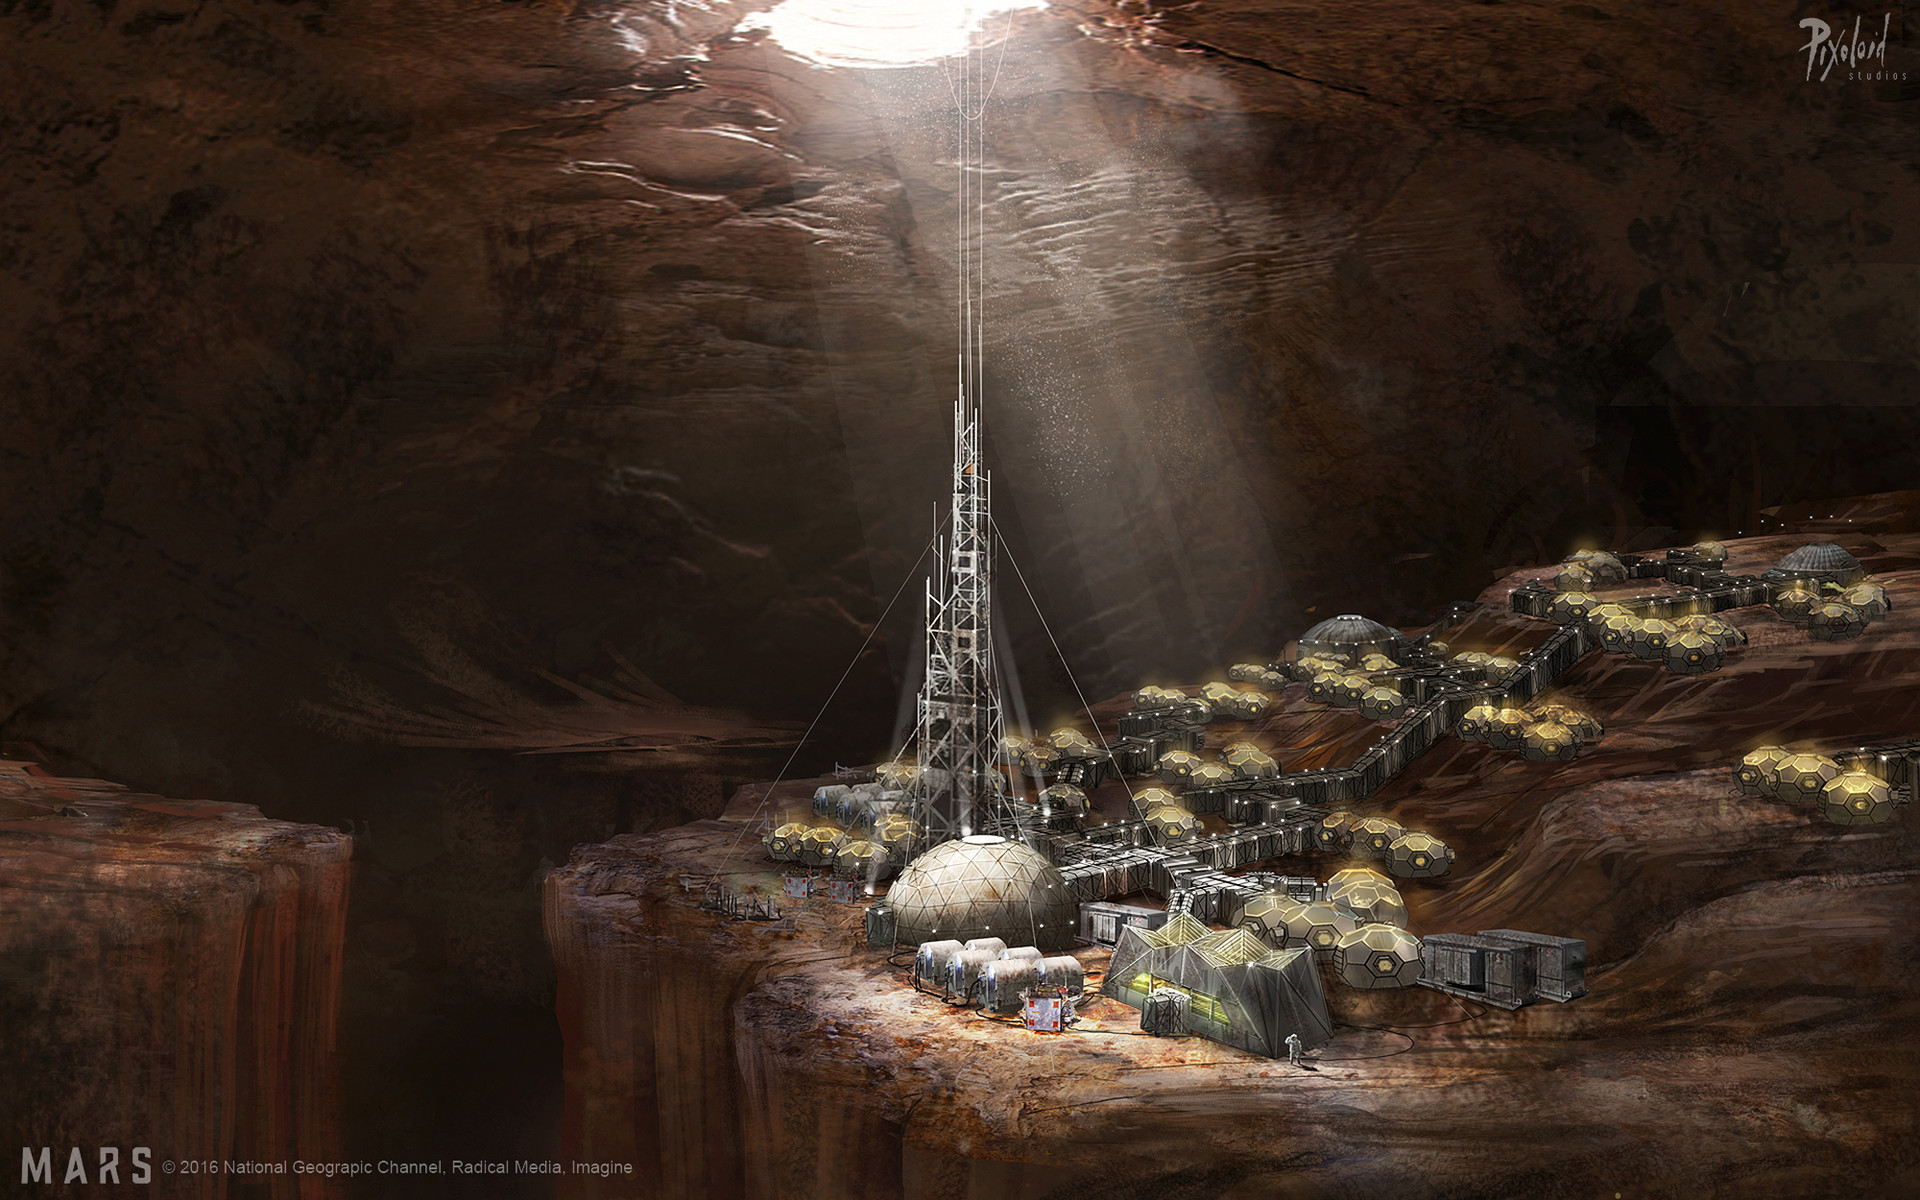 Umjetnički prikaz podzemne kolonije na Marsu (©Pixoloid Studios).